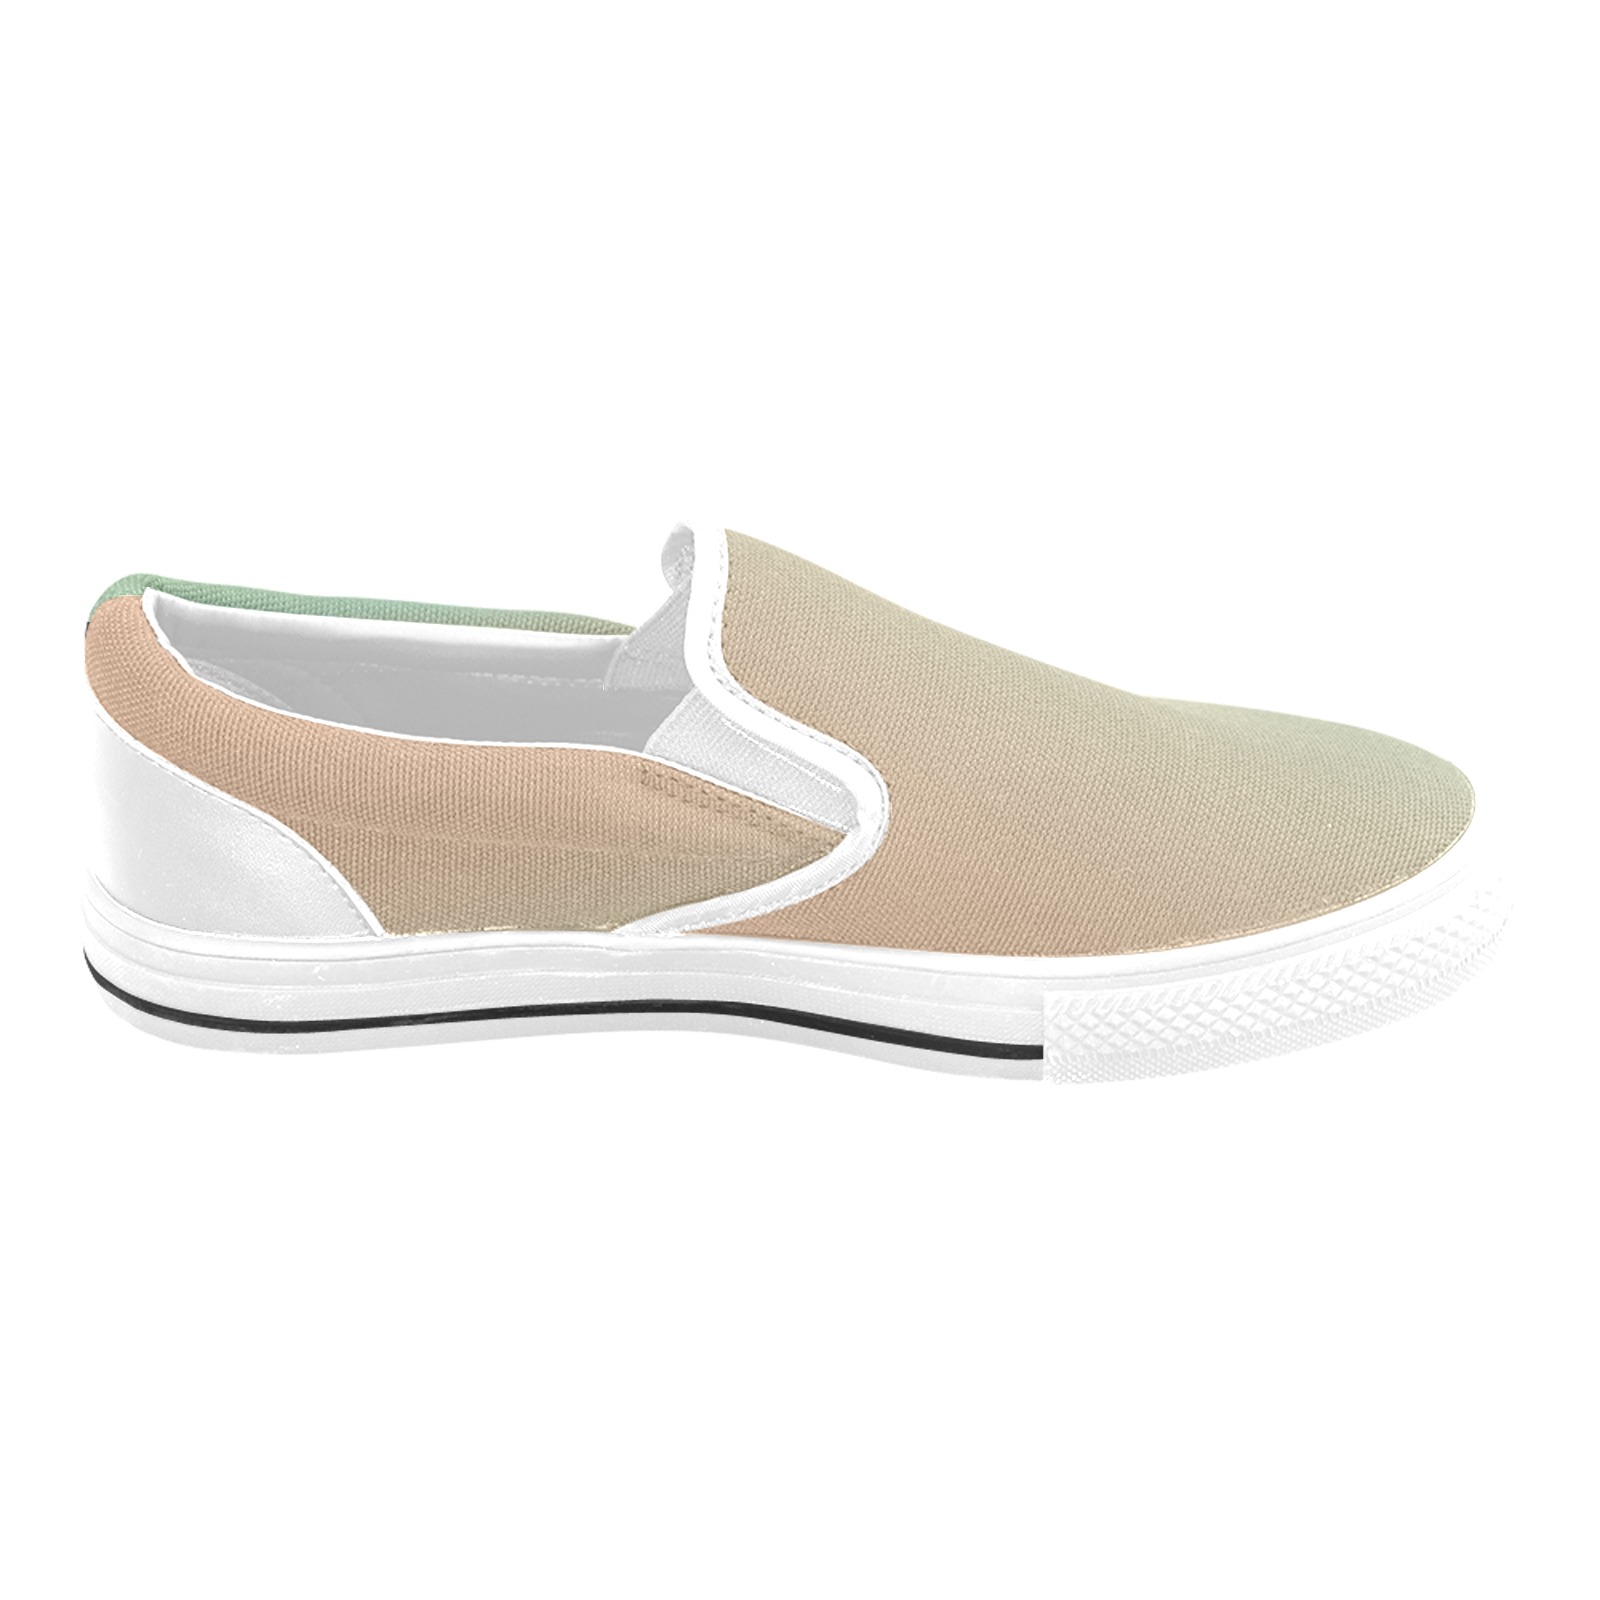 org grn white Men's Slip-on Canvas Shoes (Model 019)